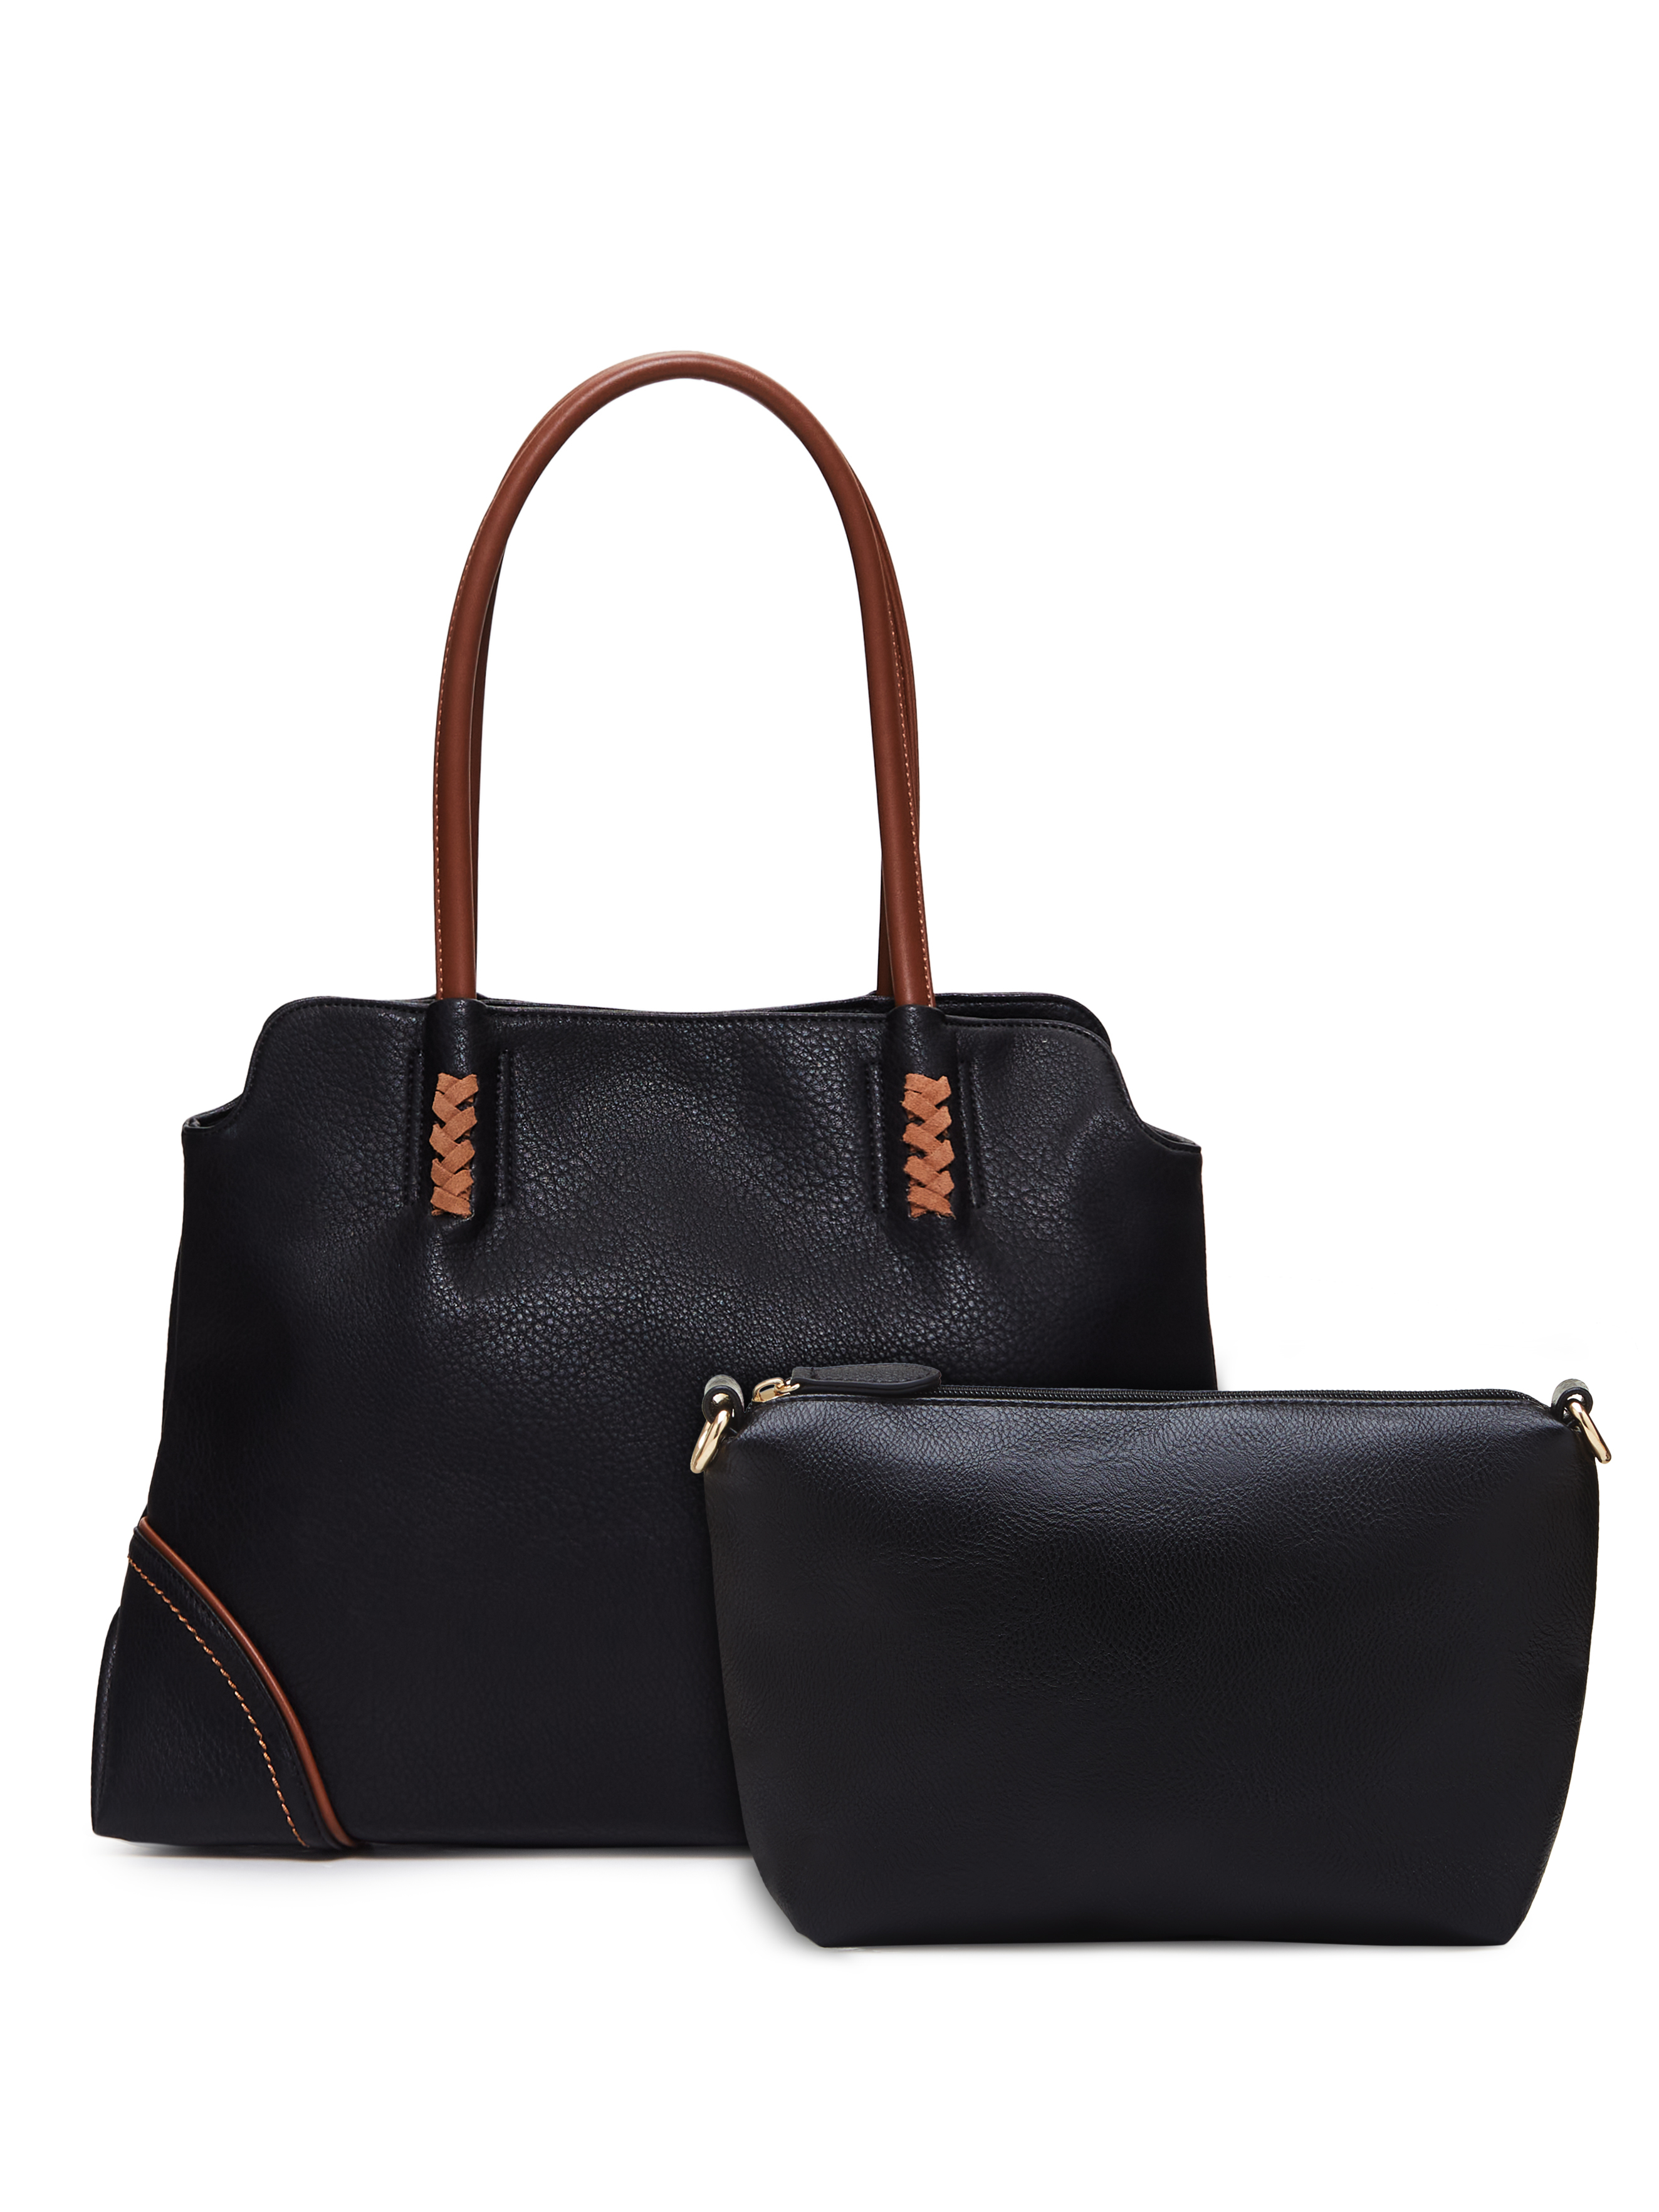 Комплект сумок женский Senorita 4, черный